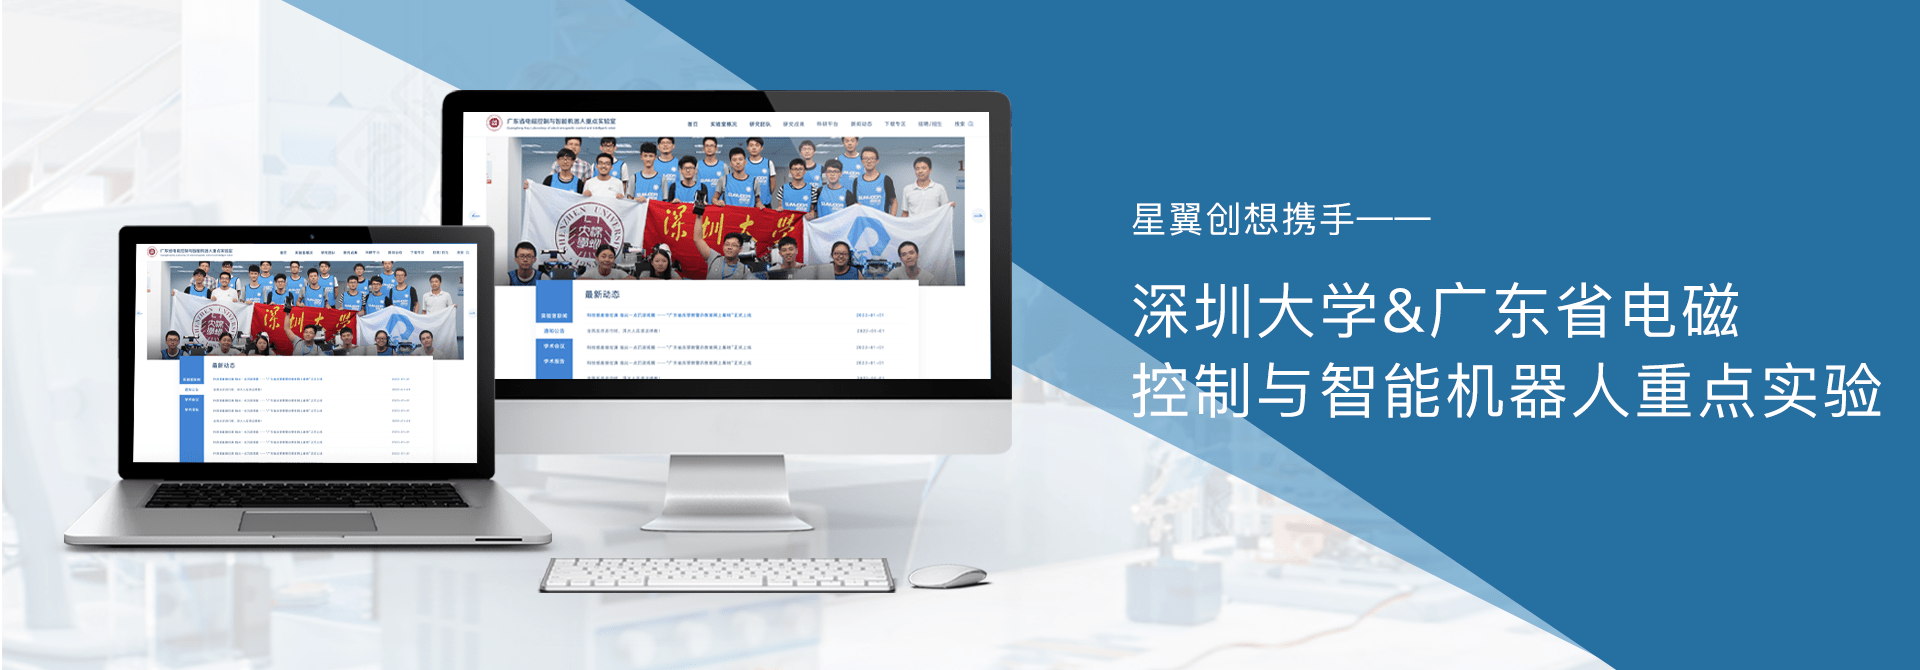 深圳大學實驗室網站設計開發